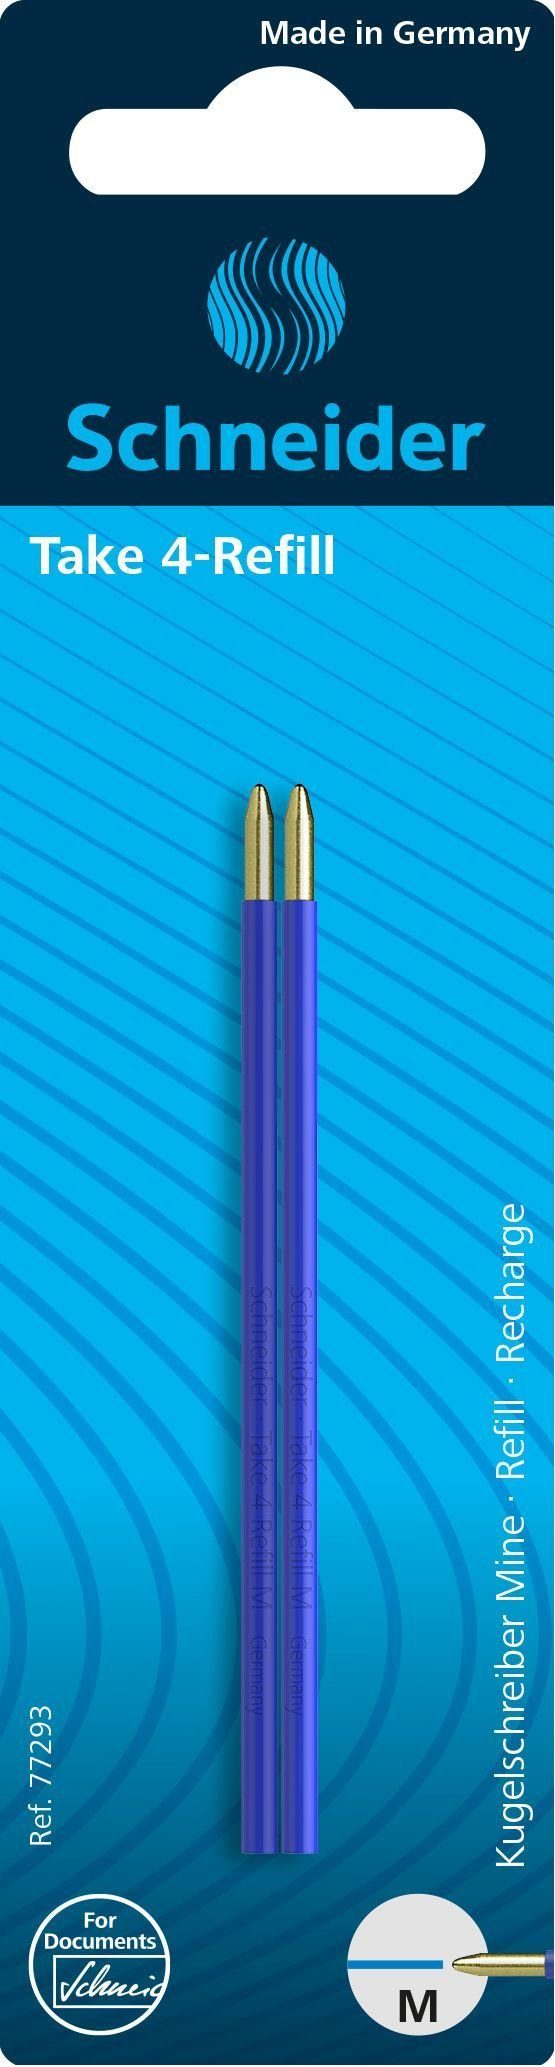 Schneider Handgelenkstütze Kugelschreibermine Take 4 Refill - M, blau (dokumentenecht), 2 Stück